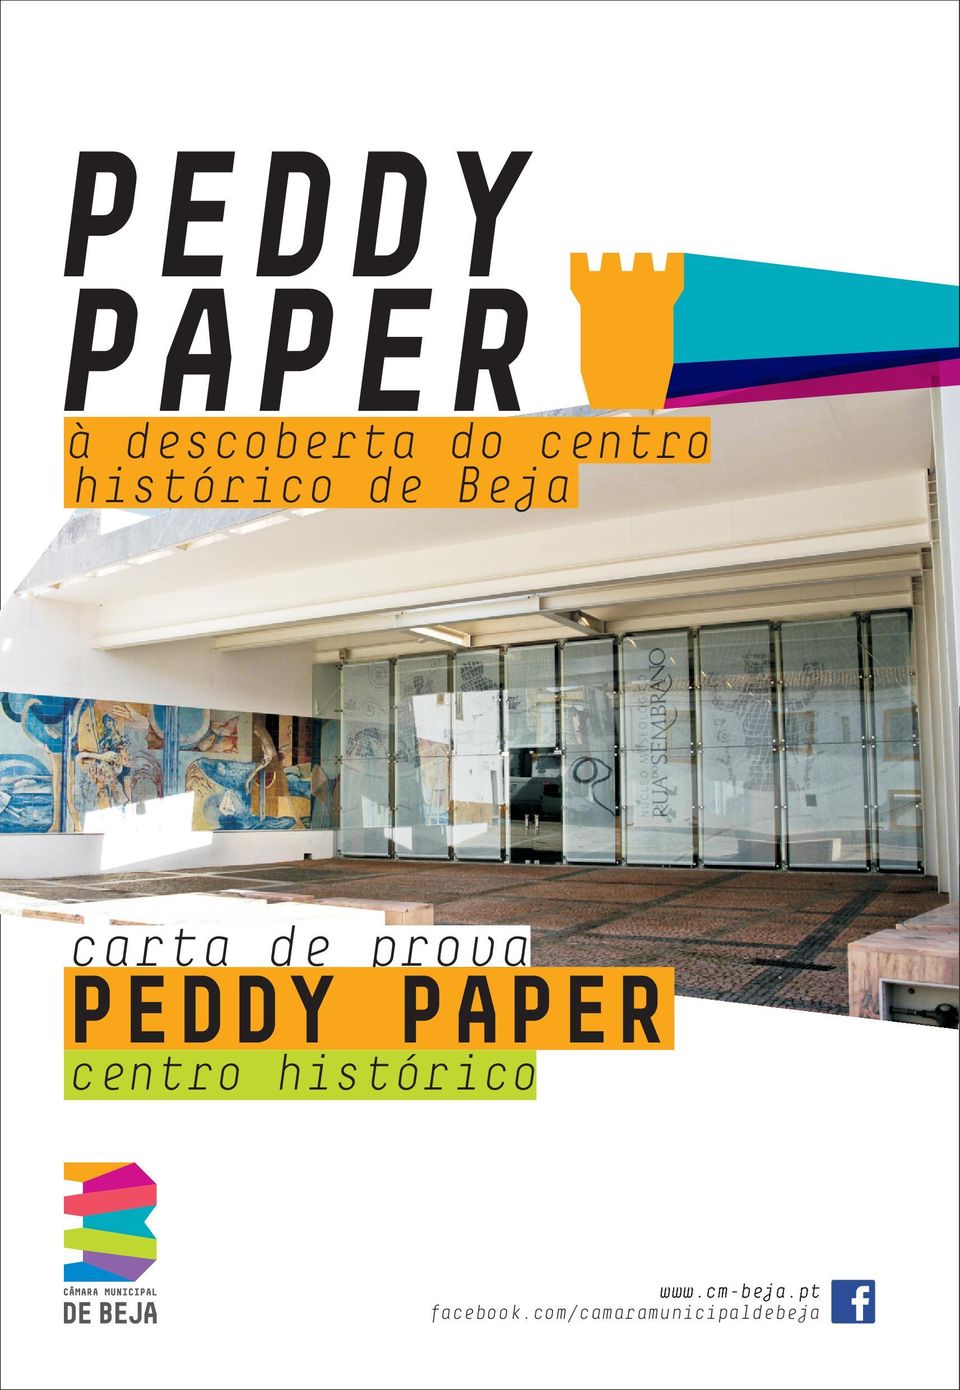 PEDDY PAPER centro histórico www.